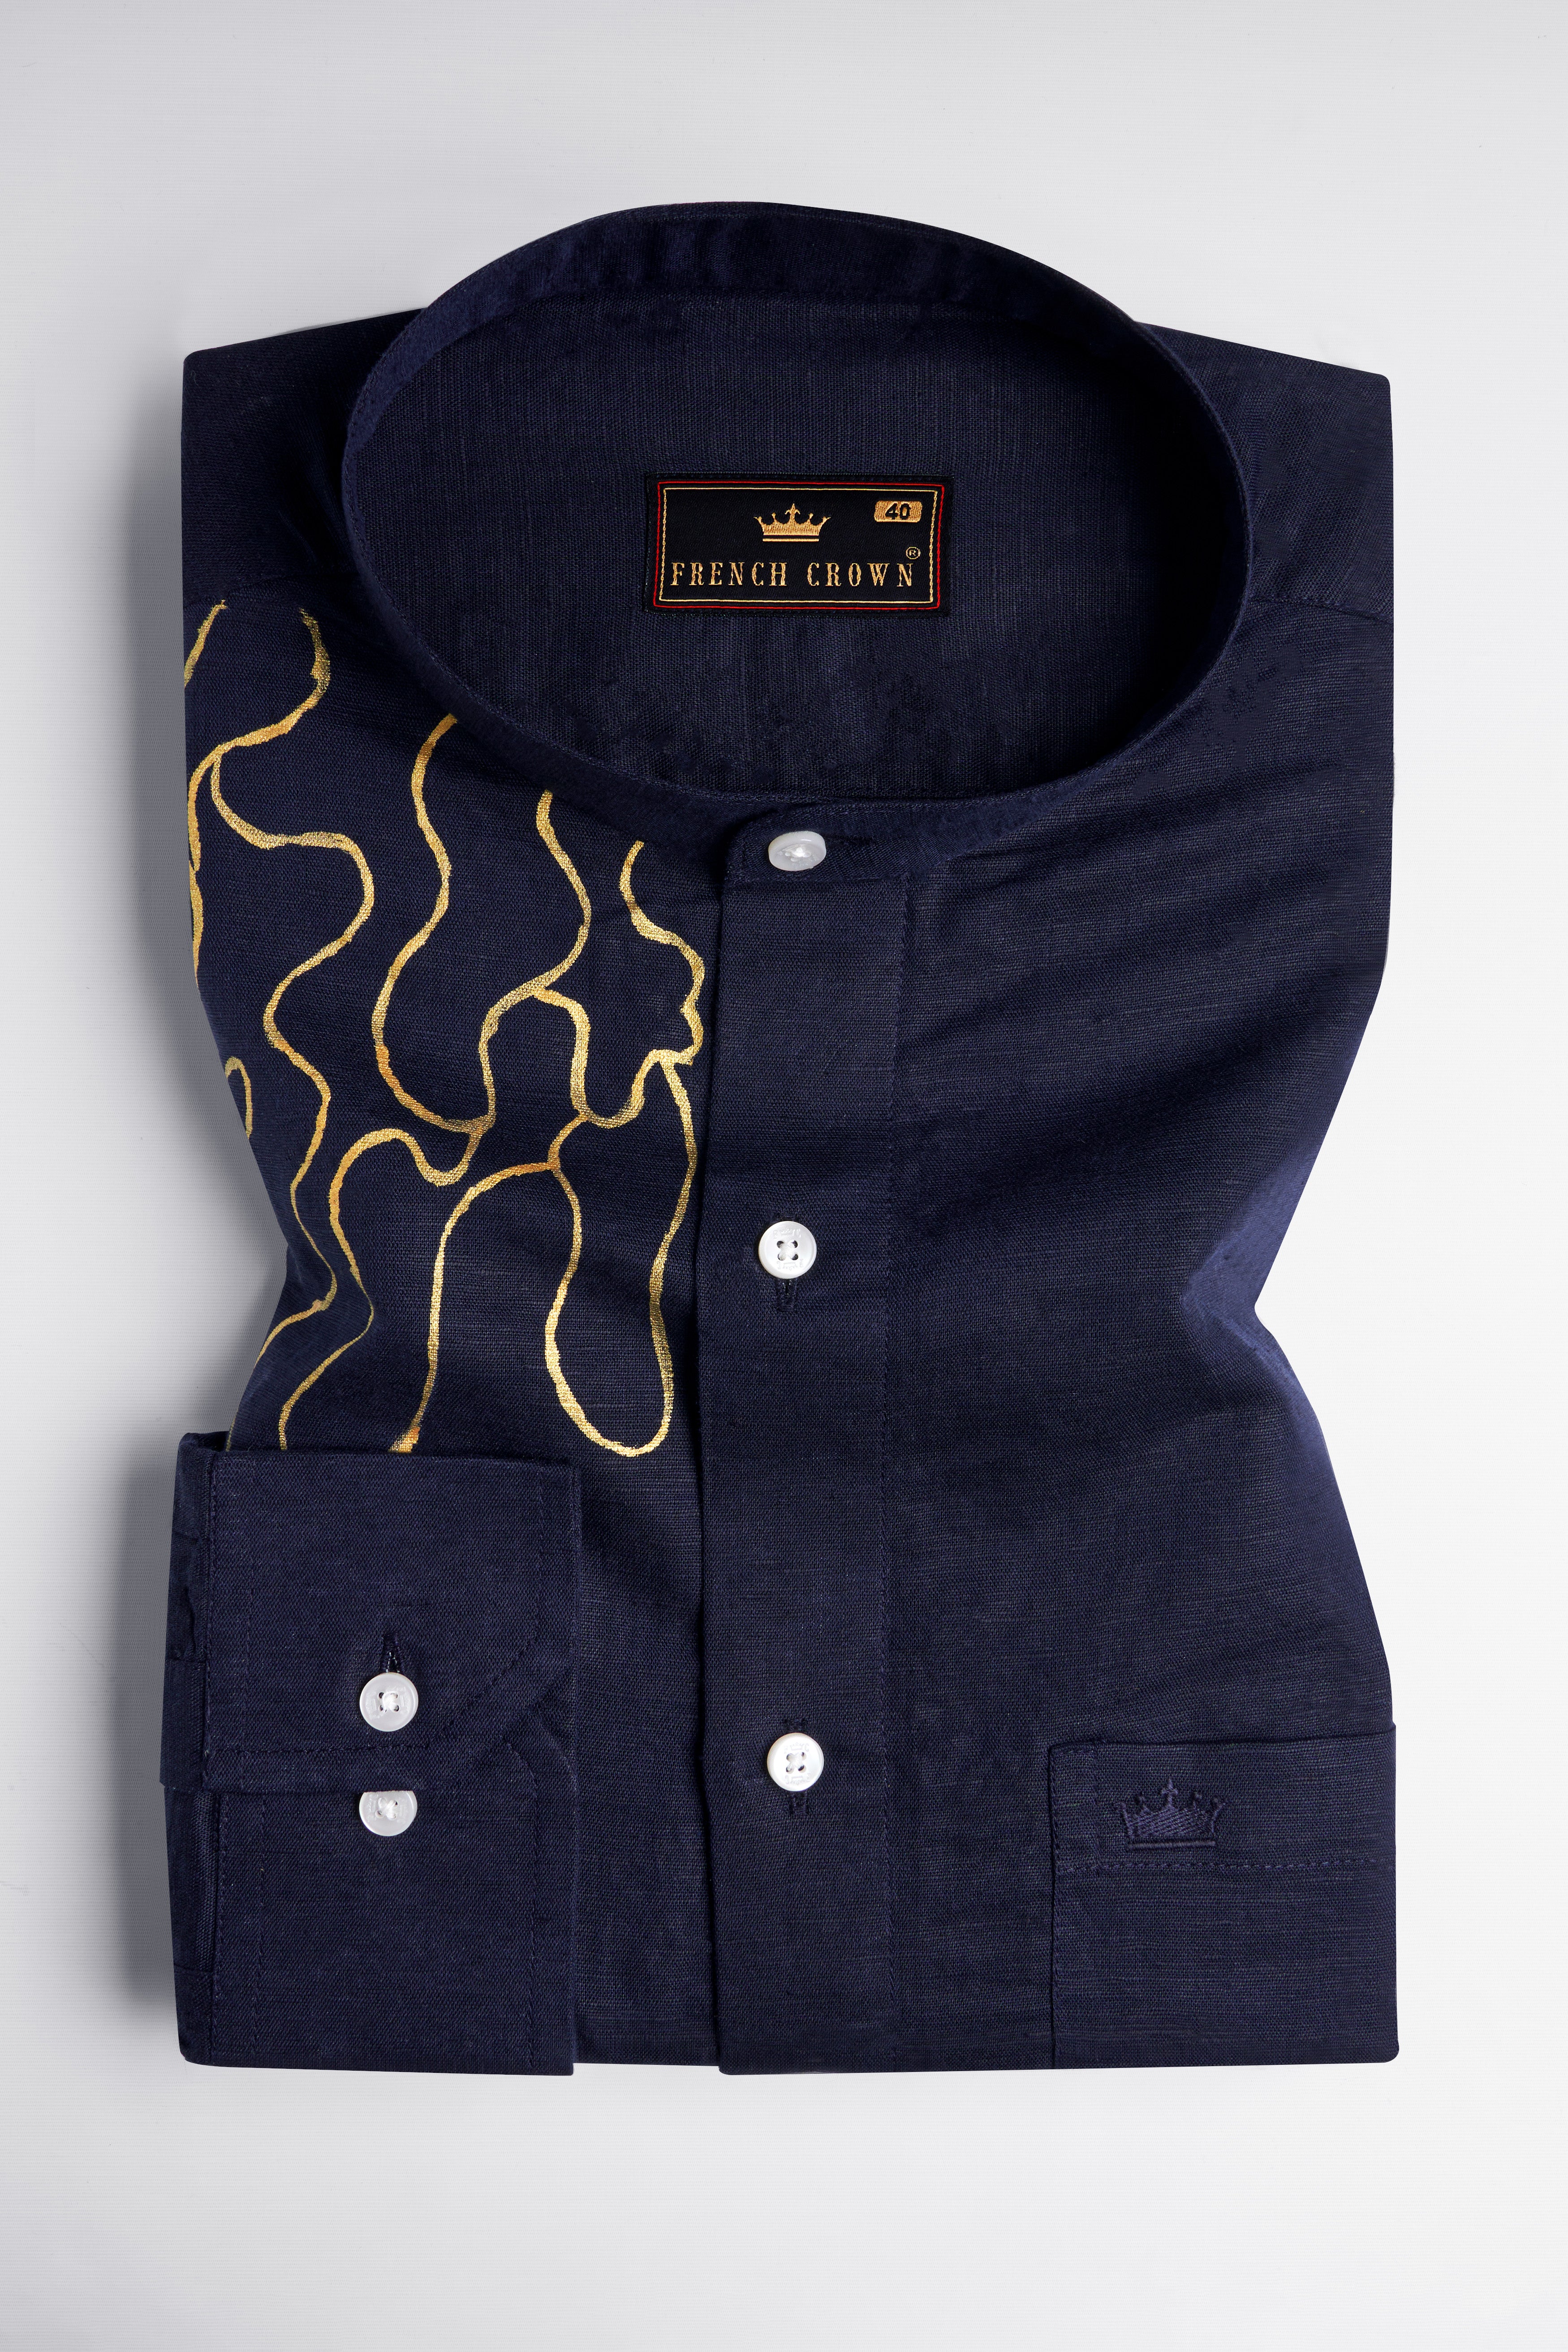 Cloud Burst Navy Blue Hand Painted Luxurious Linen Designer Shirt